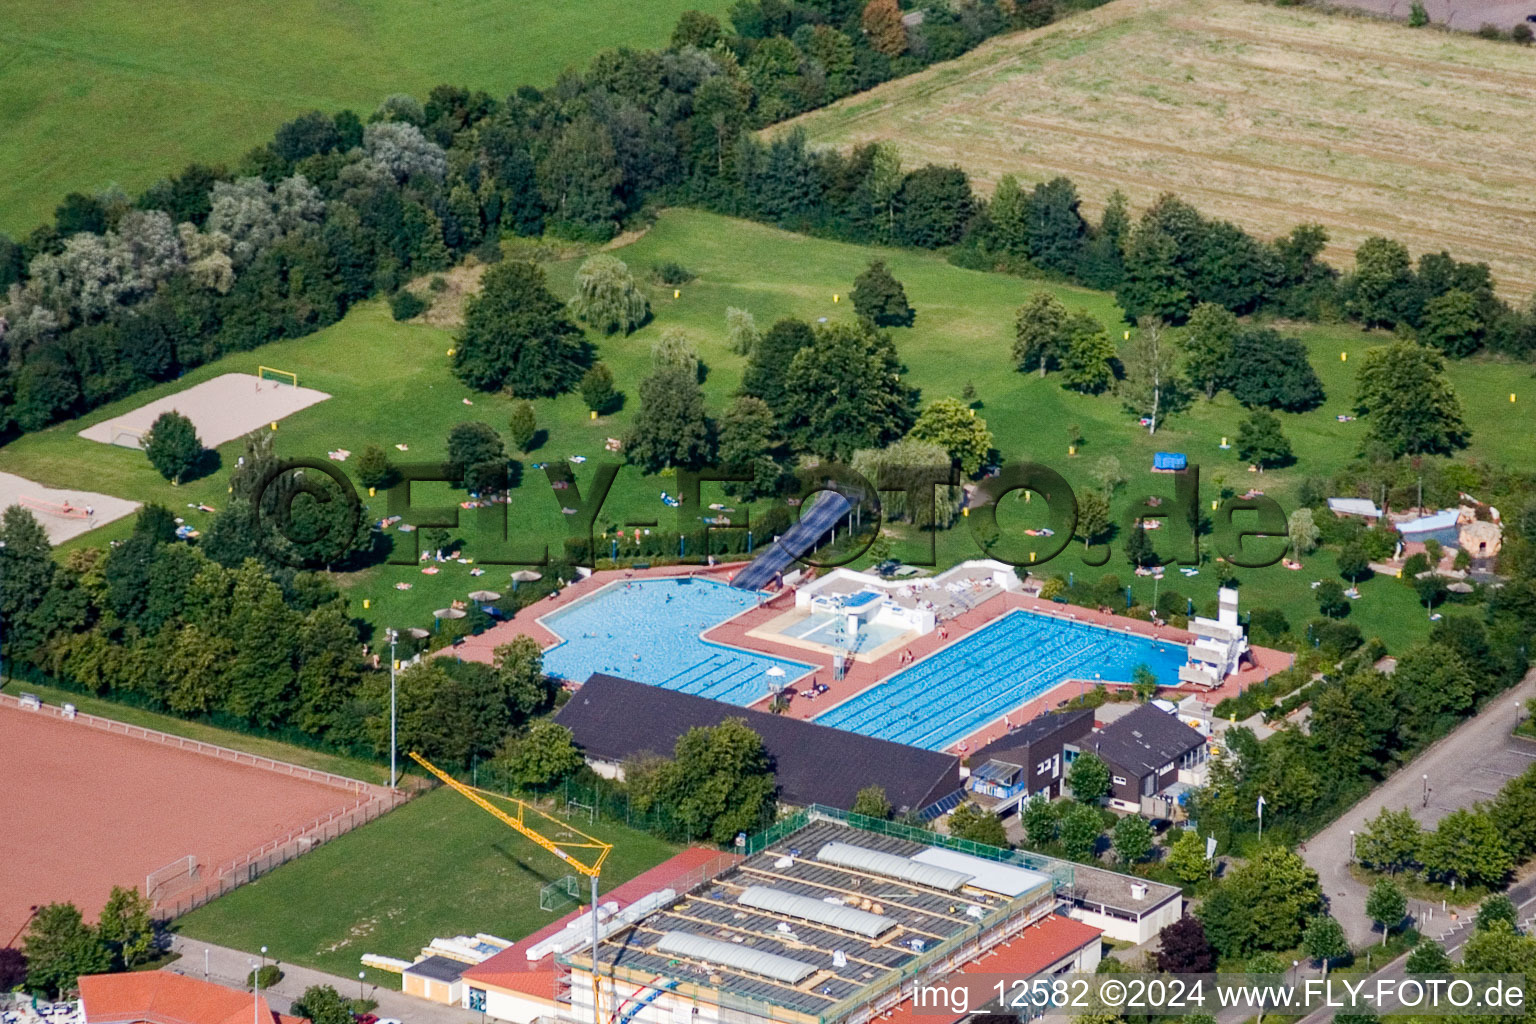 Luftbild von Freibad in Offenbach an der Queich im Bundesland Rheinland-Pfalz, Deutschland